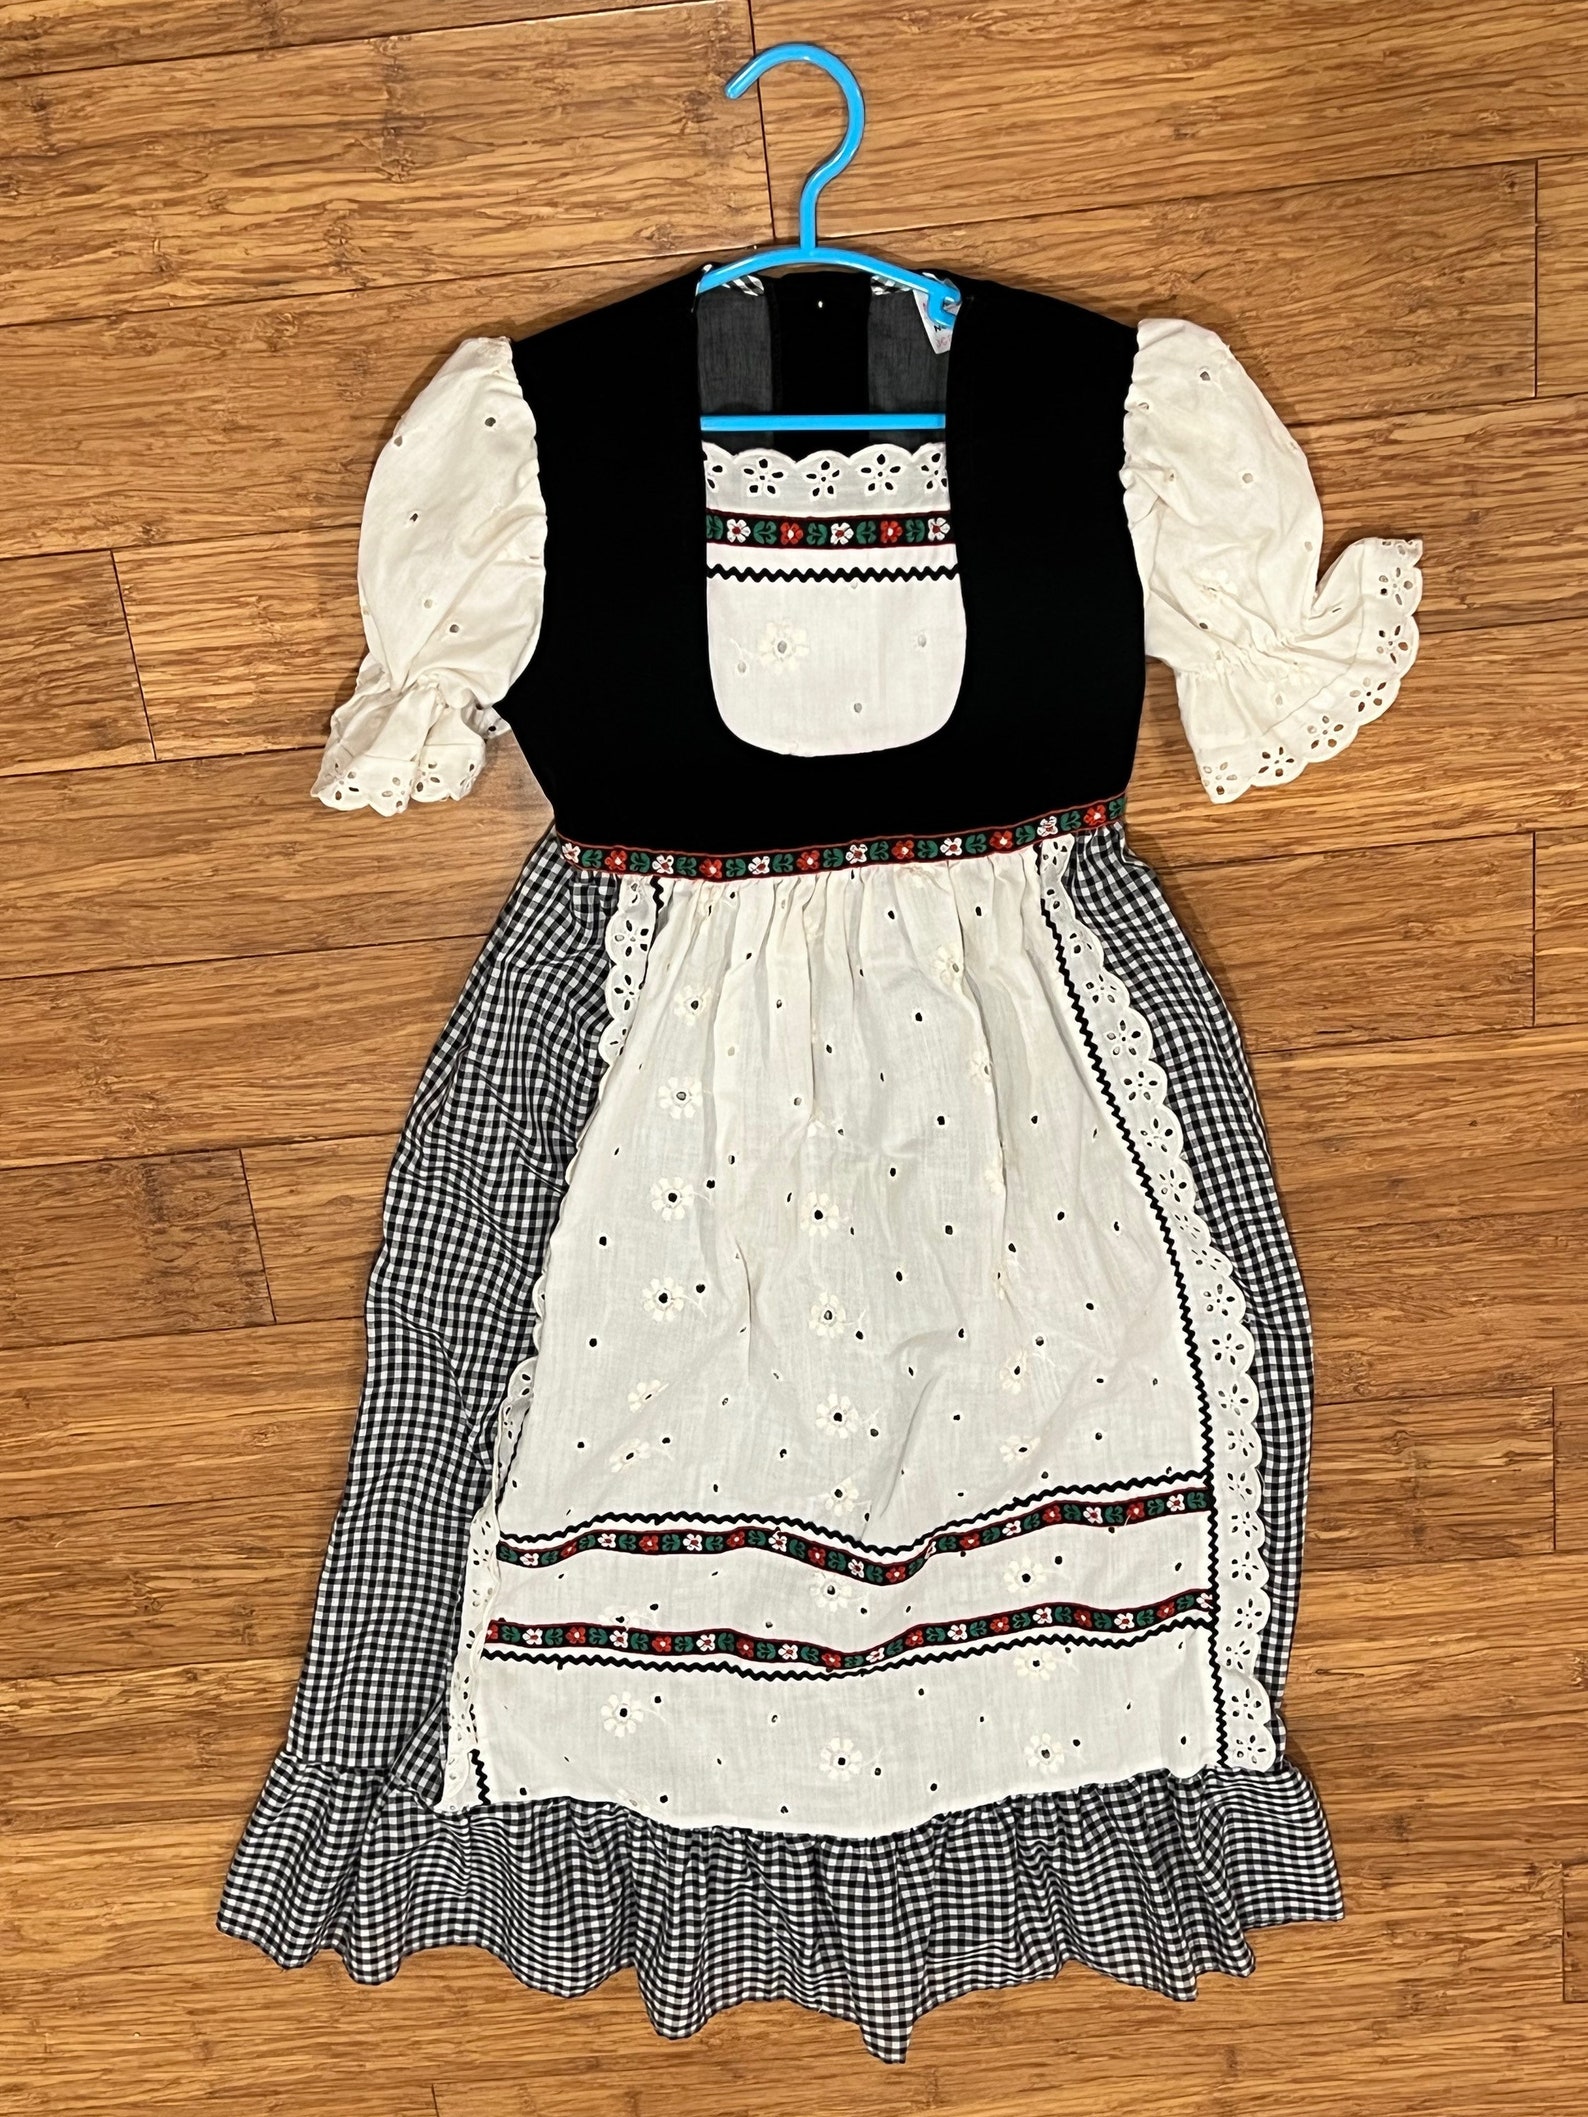 Vintage Dirndl maxi dress tagged girls size 5T vintage floral embroidered apron velveteen dress